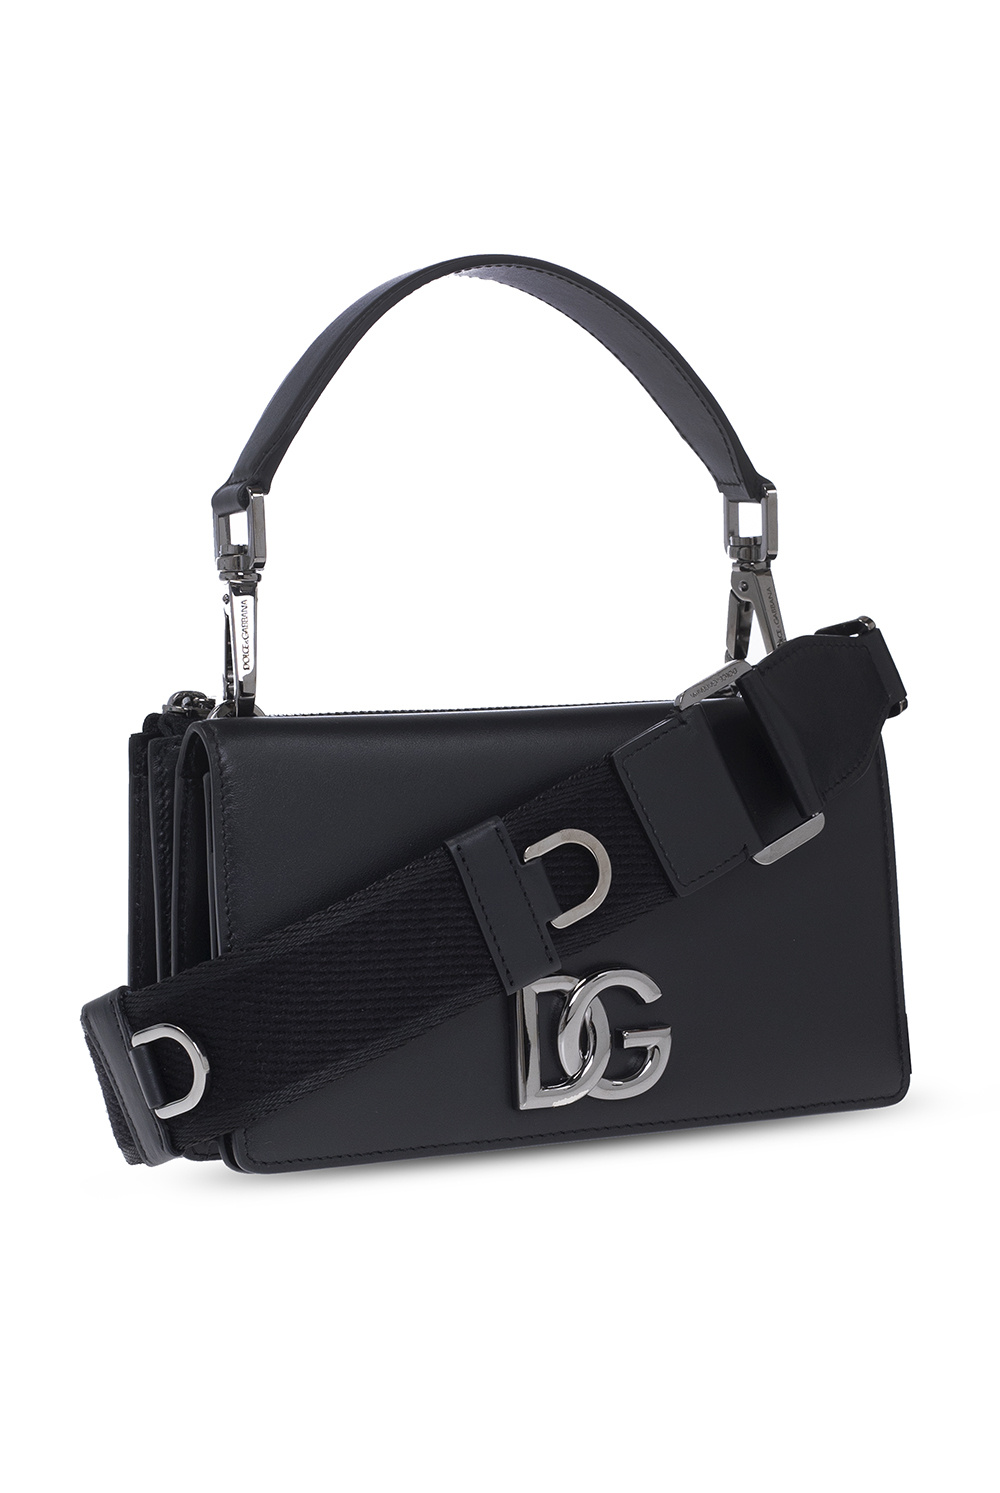 Dolce & Gabbana iPhone Pro Max Hülle Schwarz Leather shoulder bag